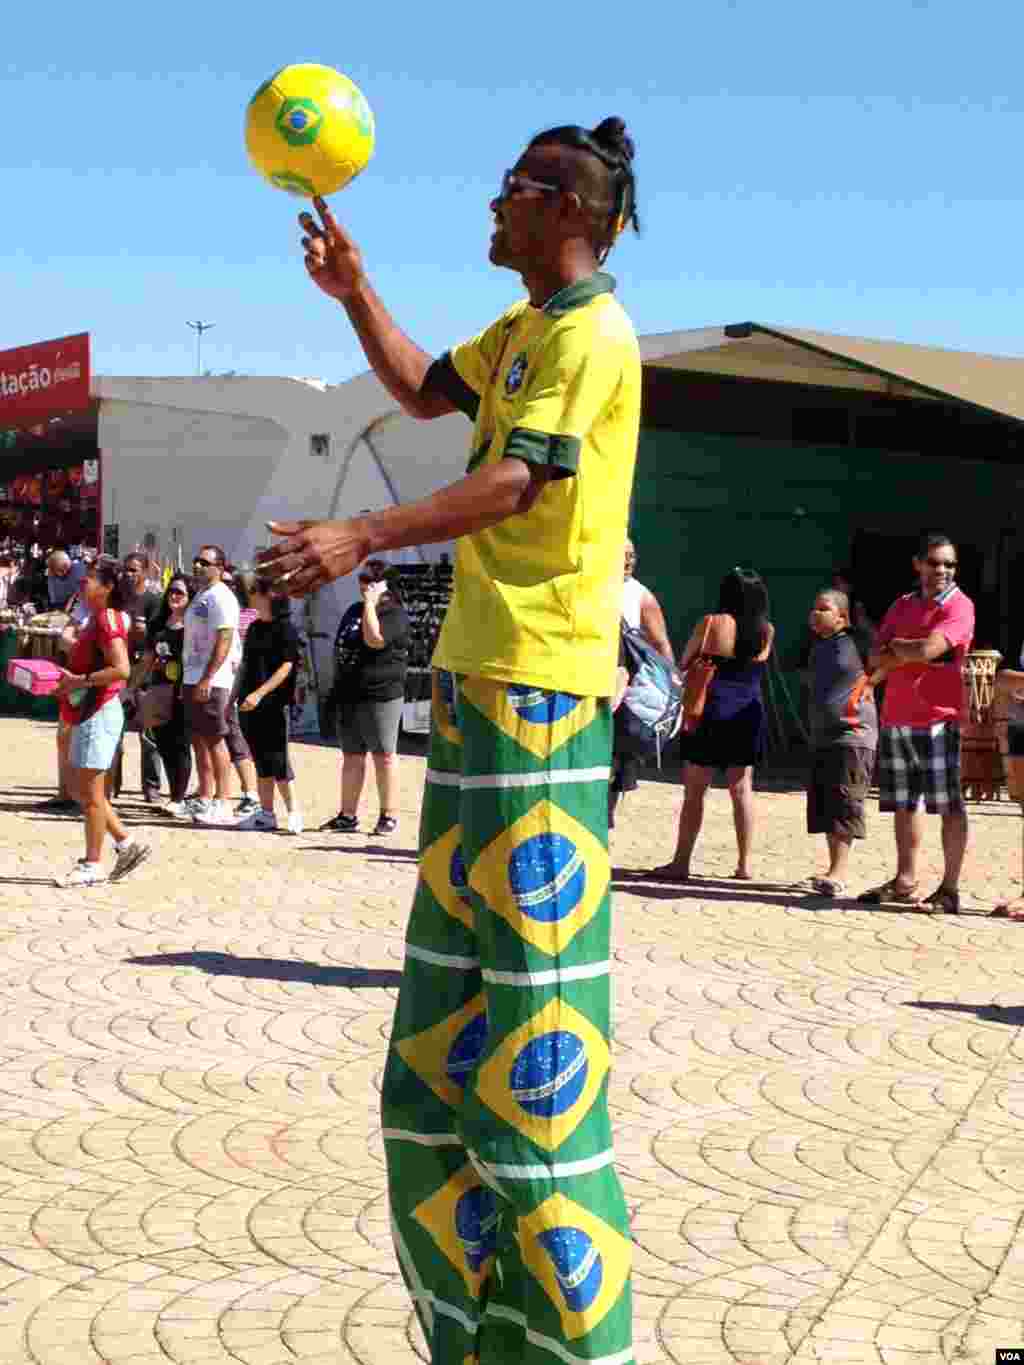 A World Cup fan in Brasilia, Brazil, June 22, 2014. (Nicolas Pinault/VOA)